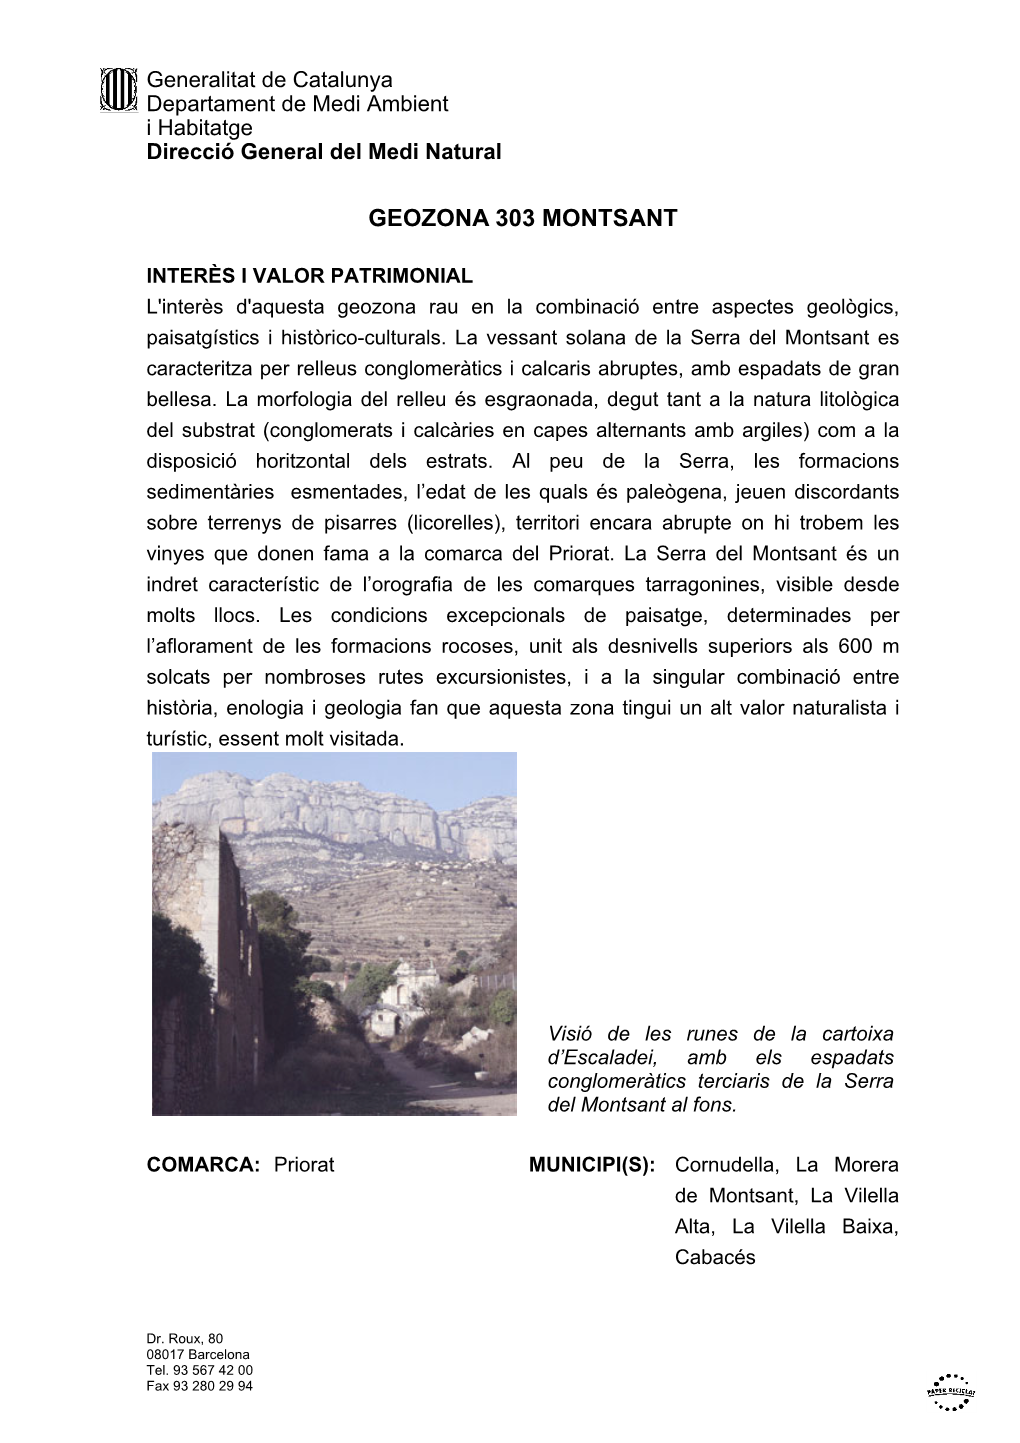 Geozona 303 Montsant